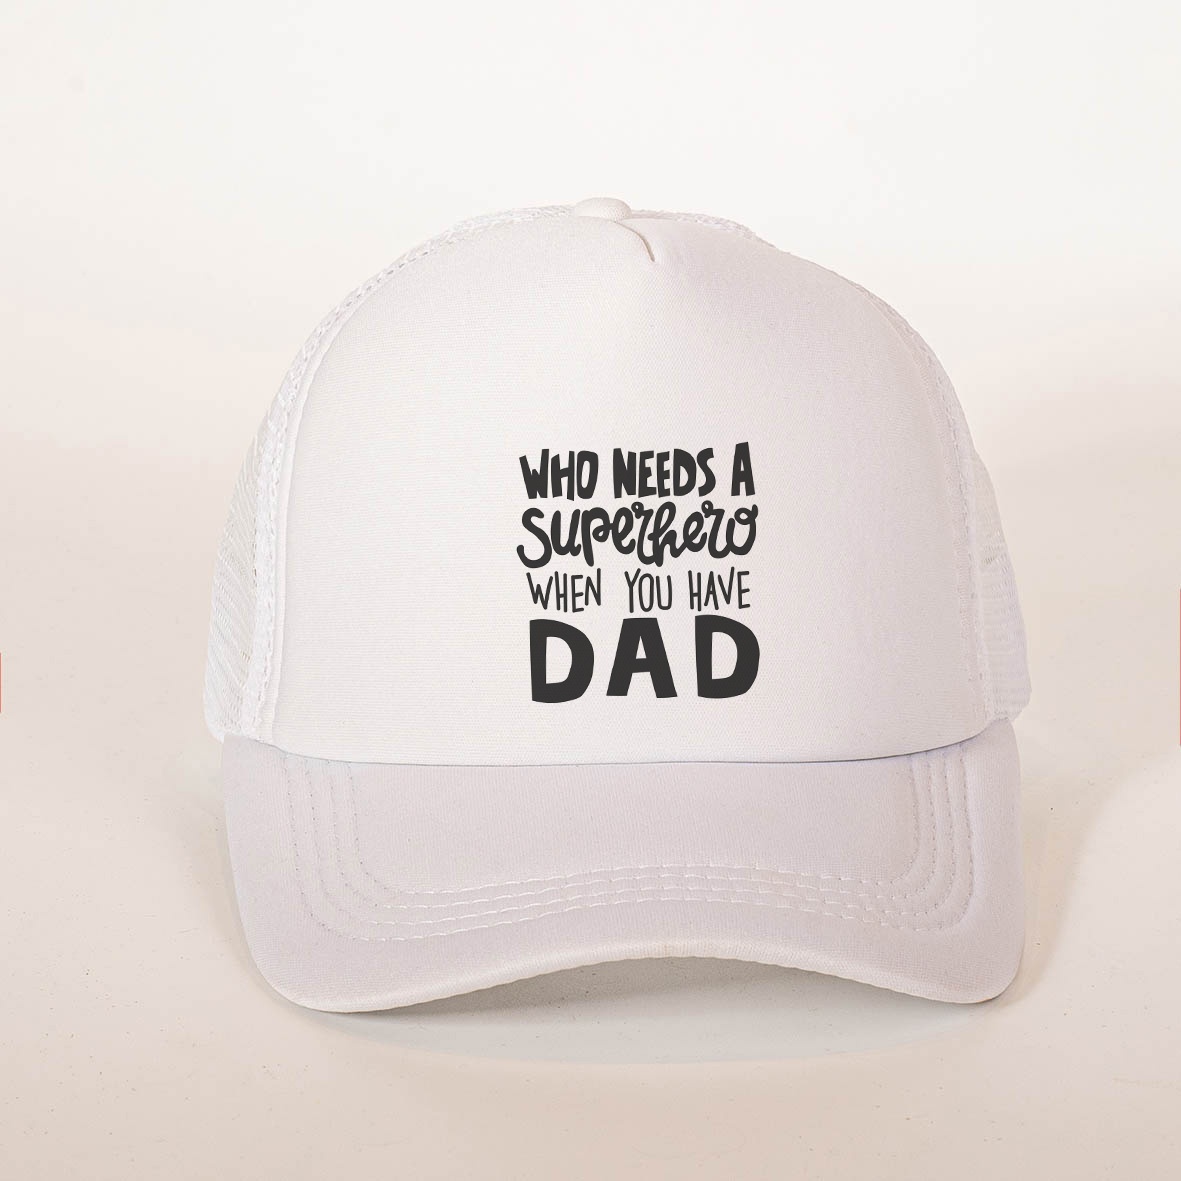 DAD - Καπέλα